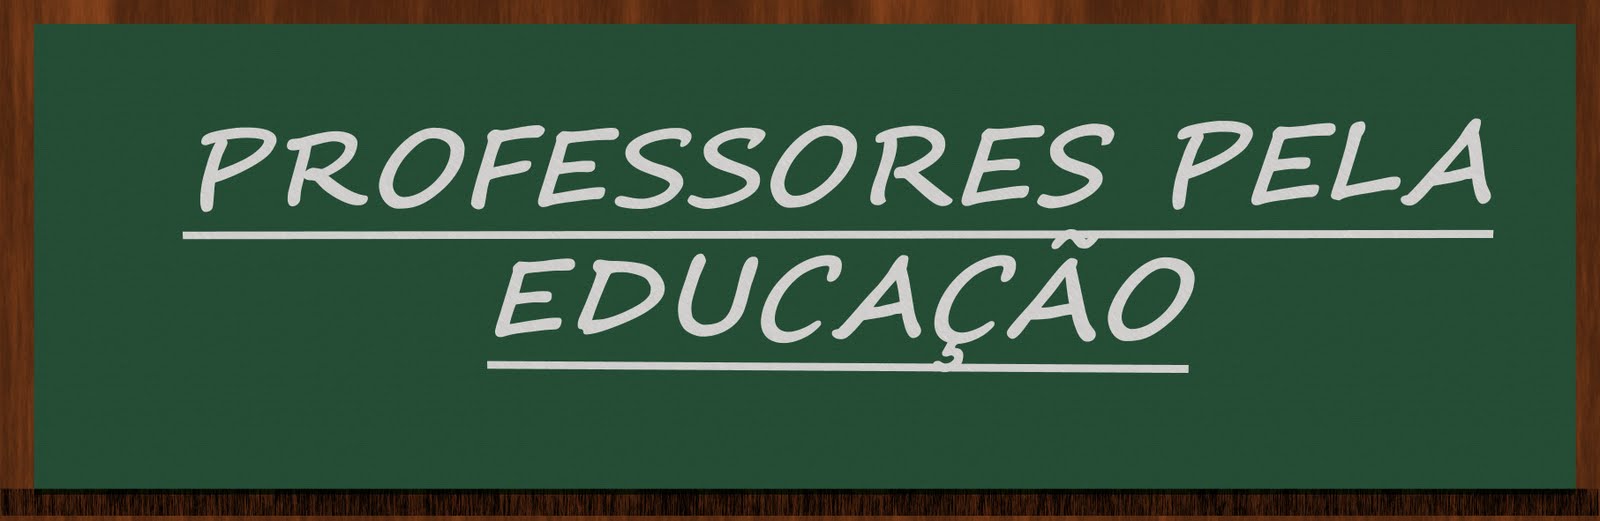 Professores pela Educação de São Paulo